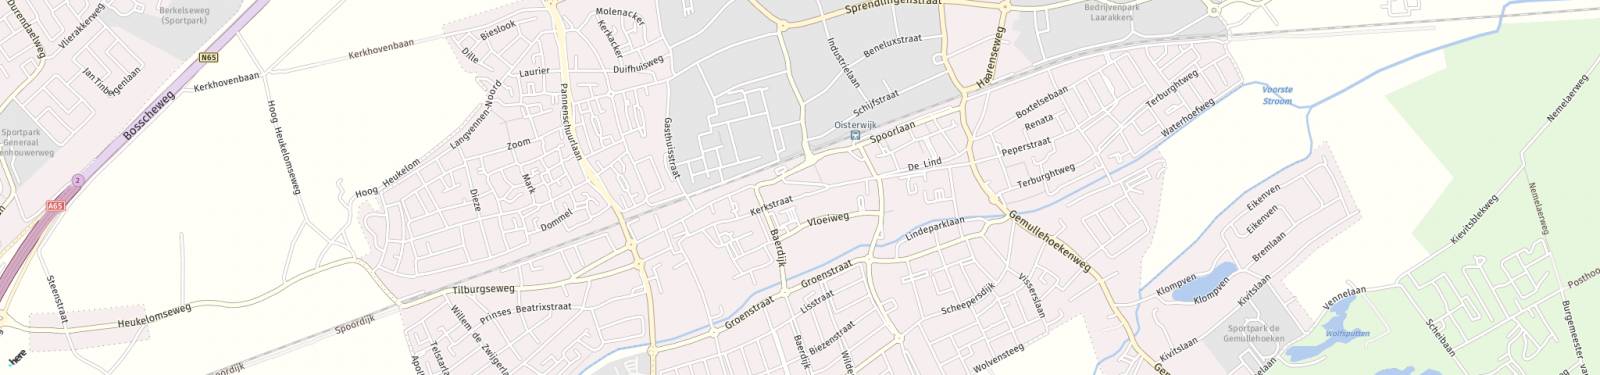 Kaart met locatie Appartement Hoogstraat 25